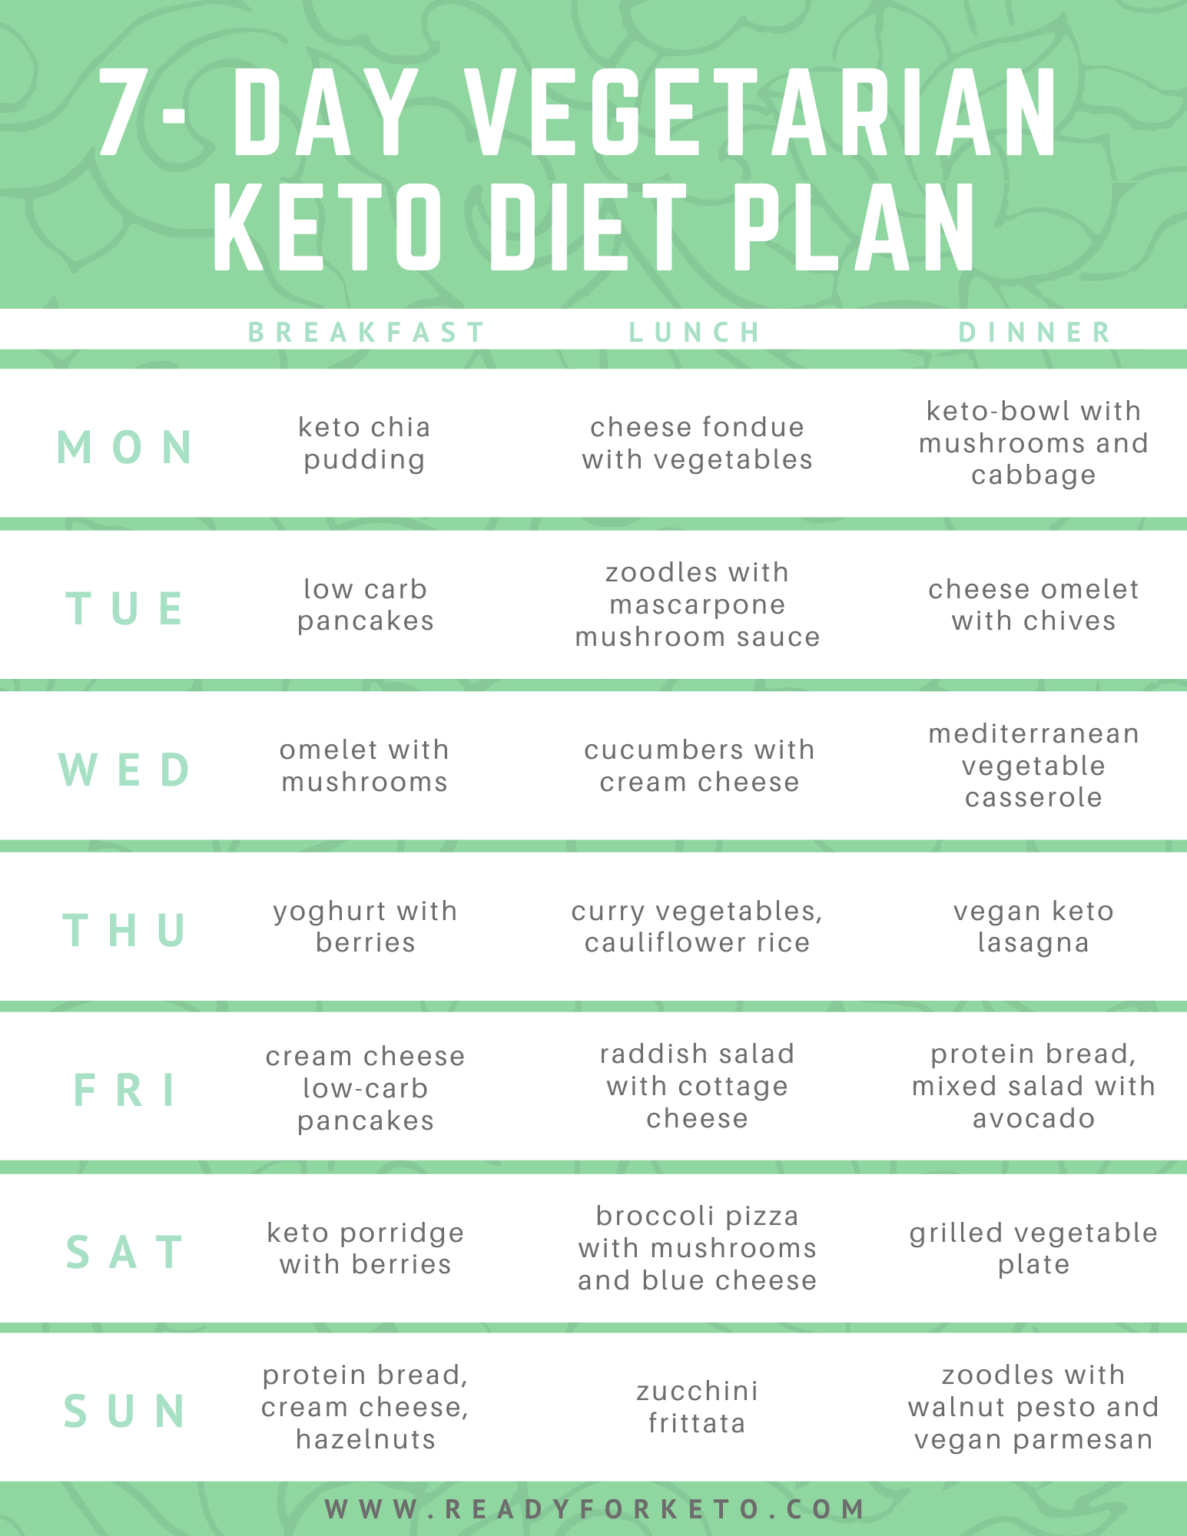 keto-diet-for-vegetarians-beginners-guide-ready-for-keto